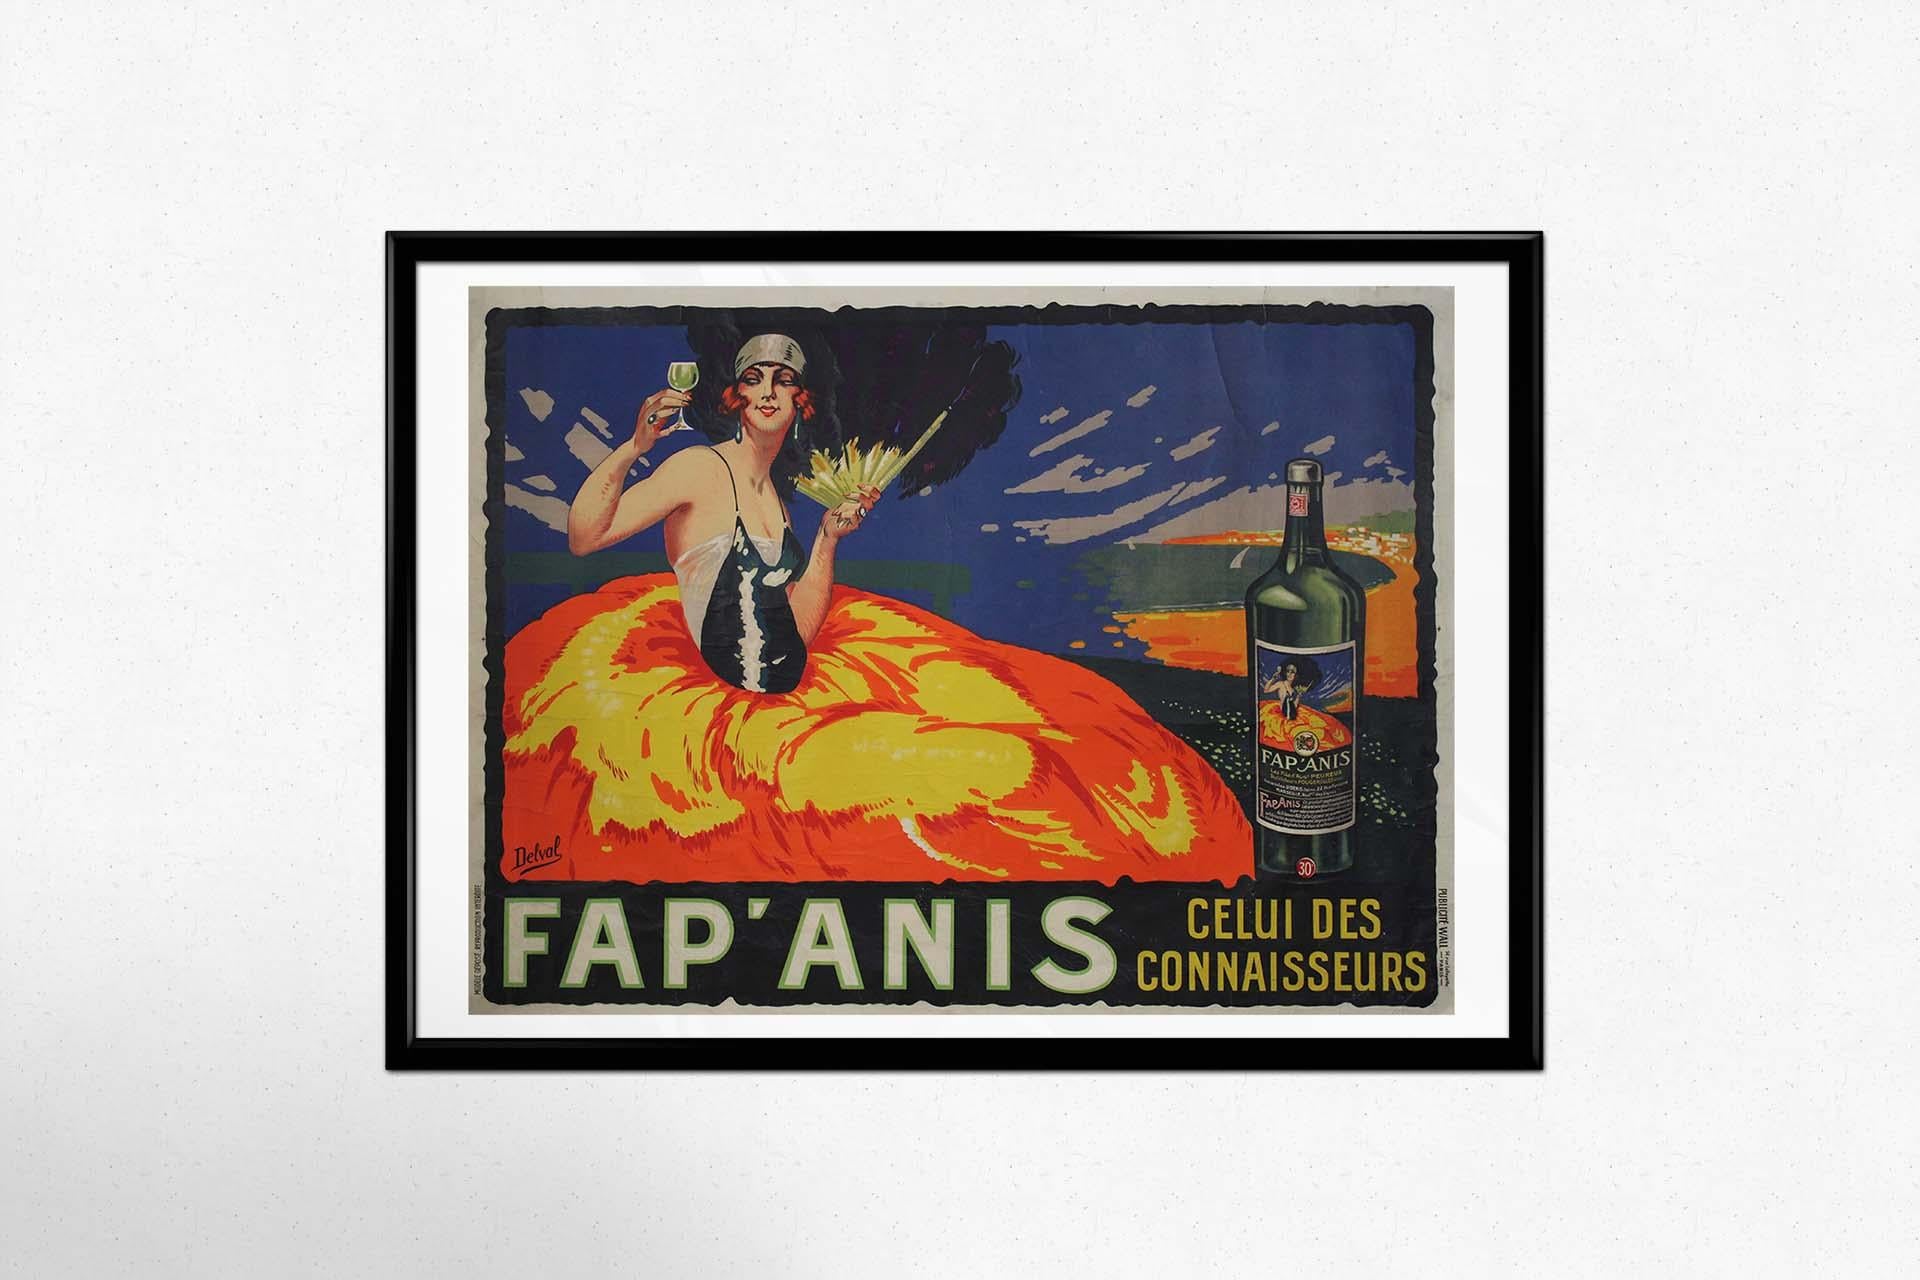 Original poster by Delval for Fap'anis alcohol celui des Connaisseurs For Sale 1